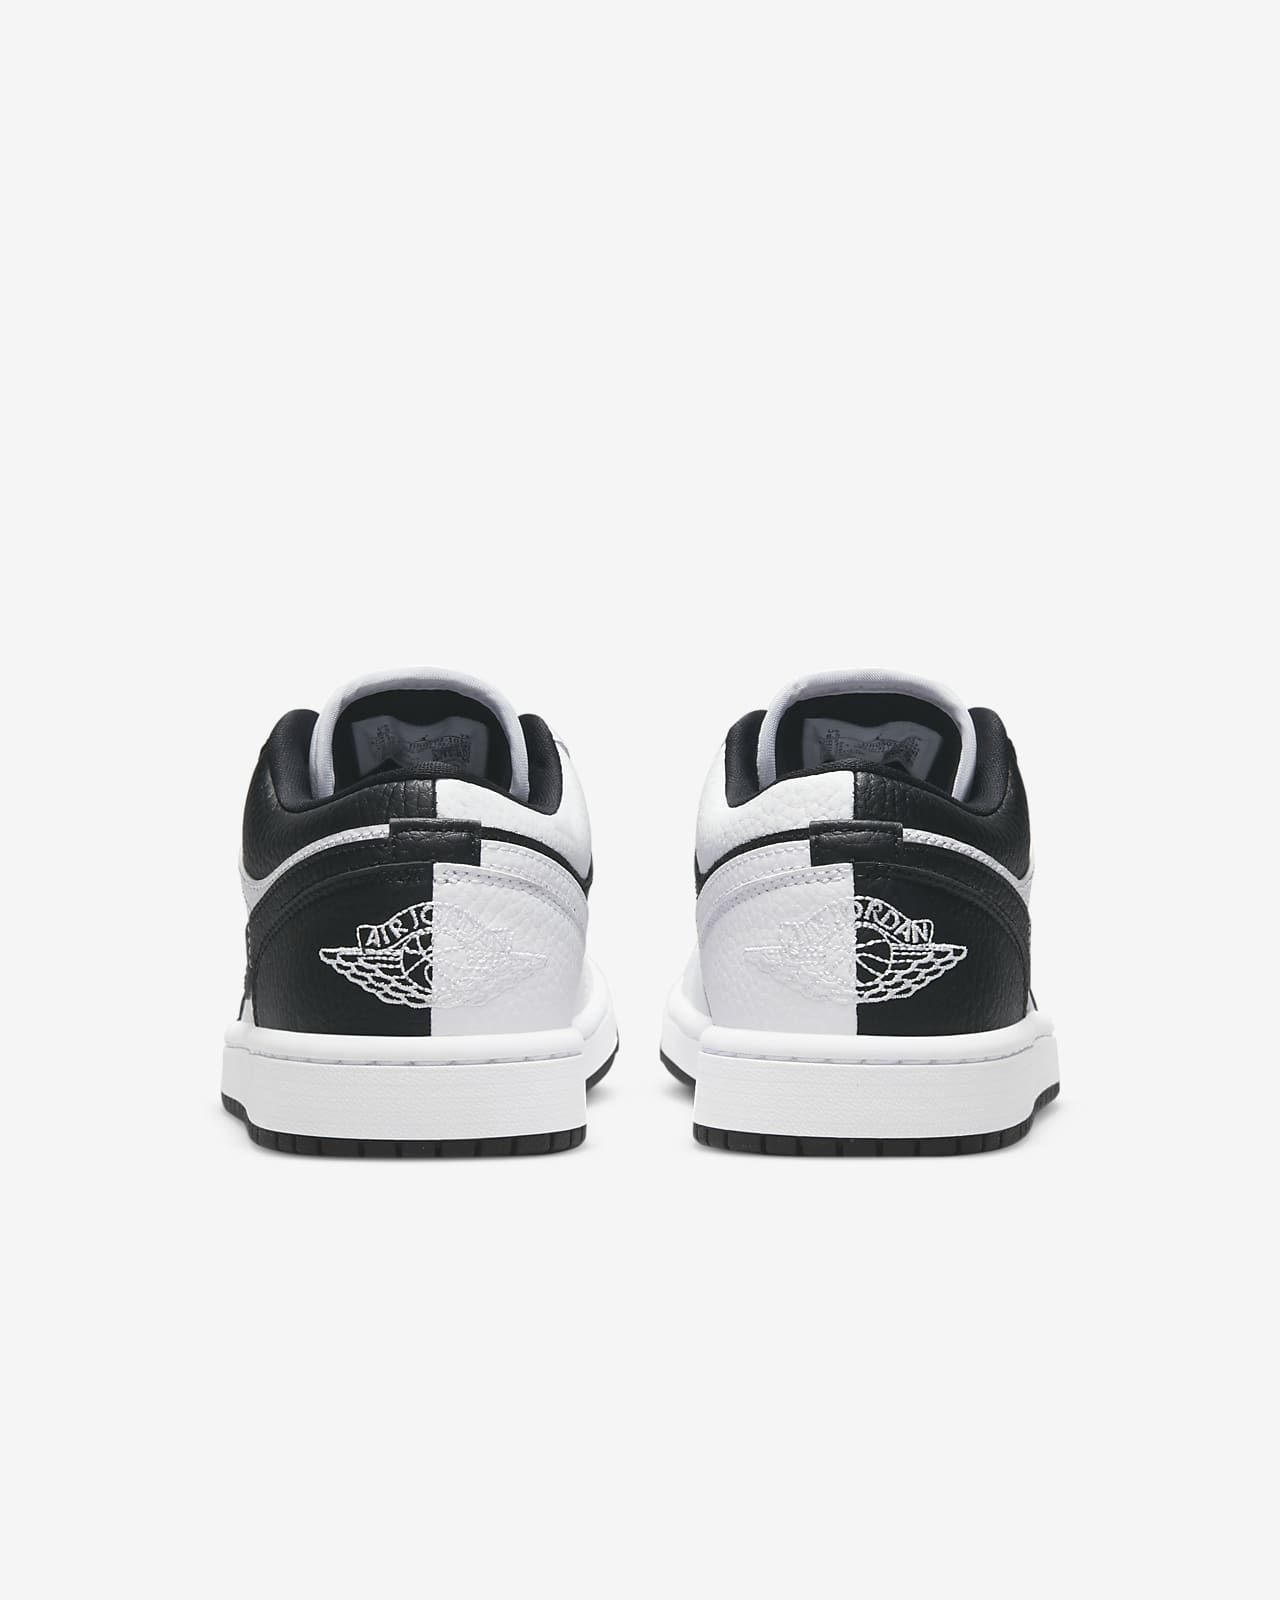 Air Jordan 1 Low SE Women's Shoes. Nike LU